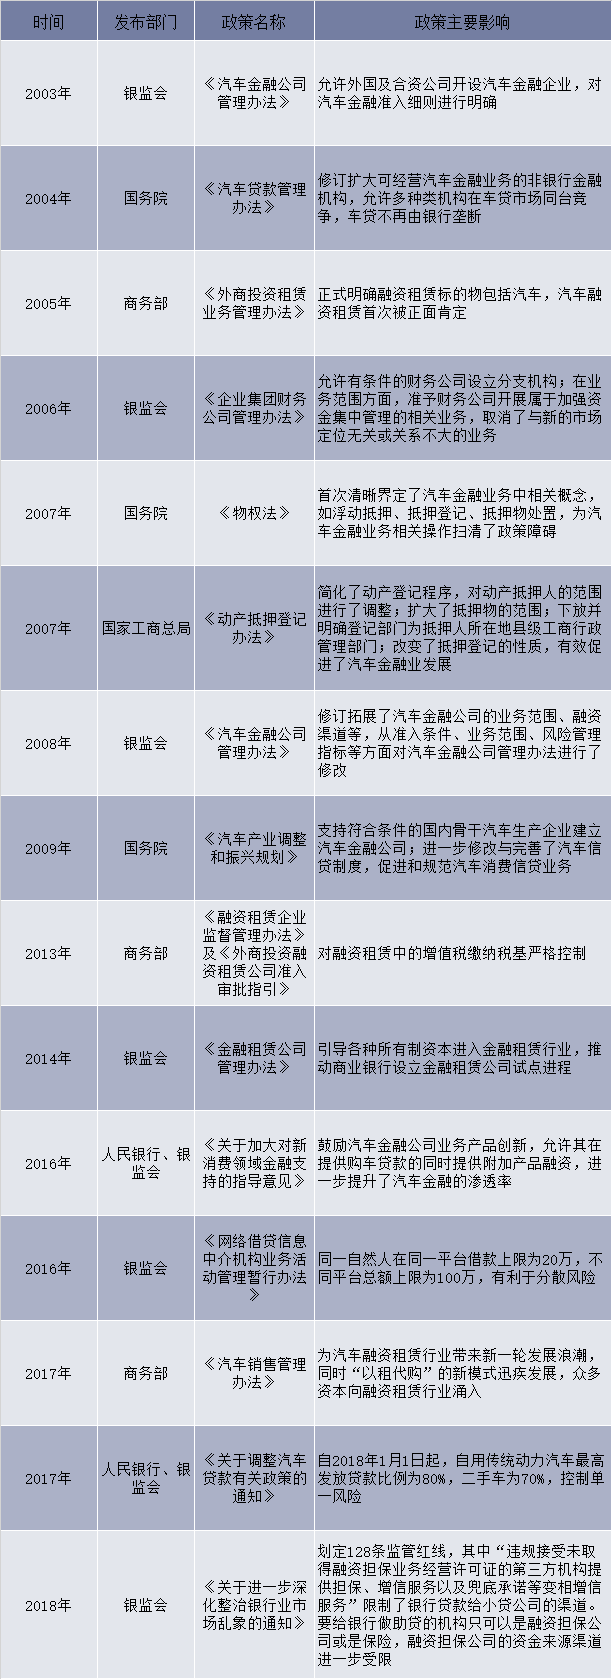 2003-2018年中国汽车金融行业相关产业政策及法规